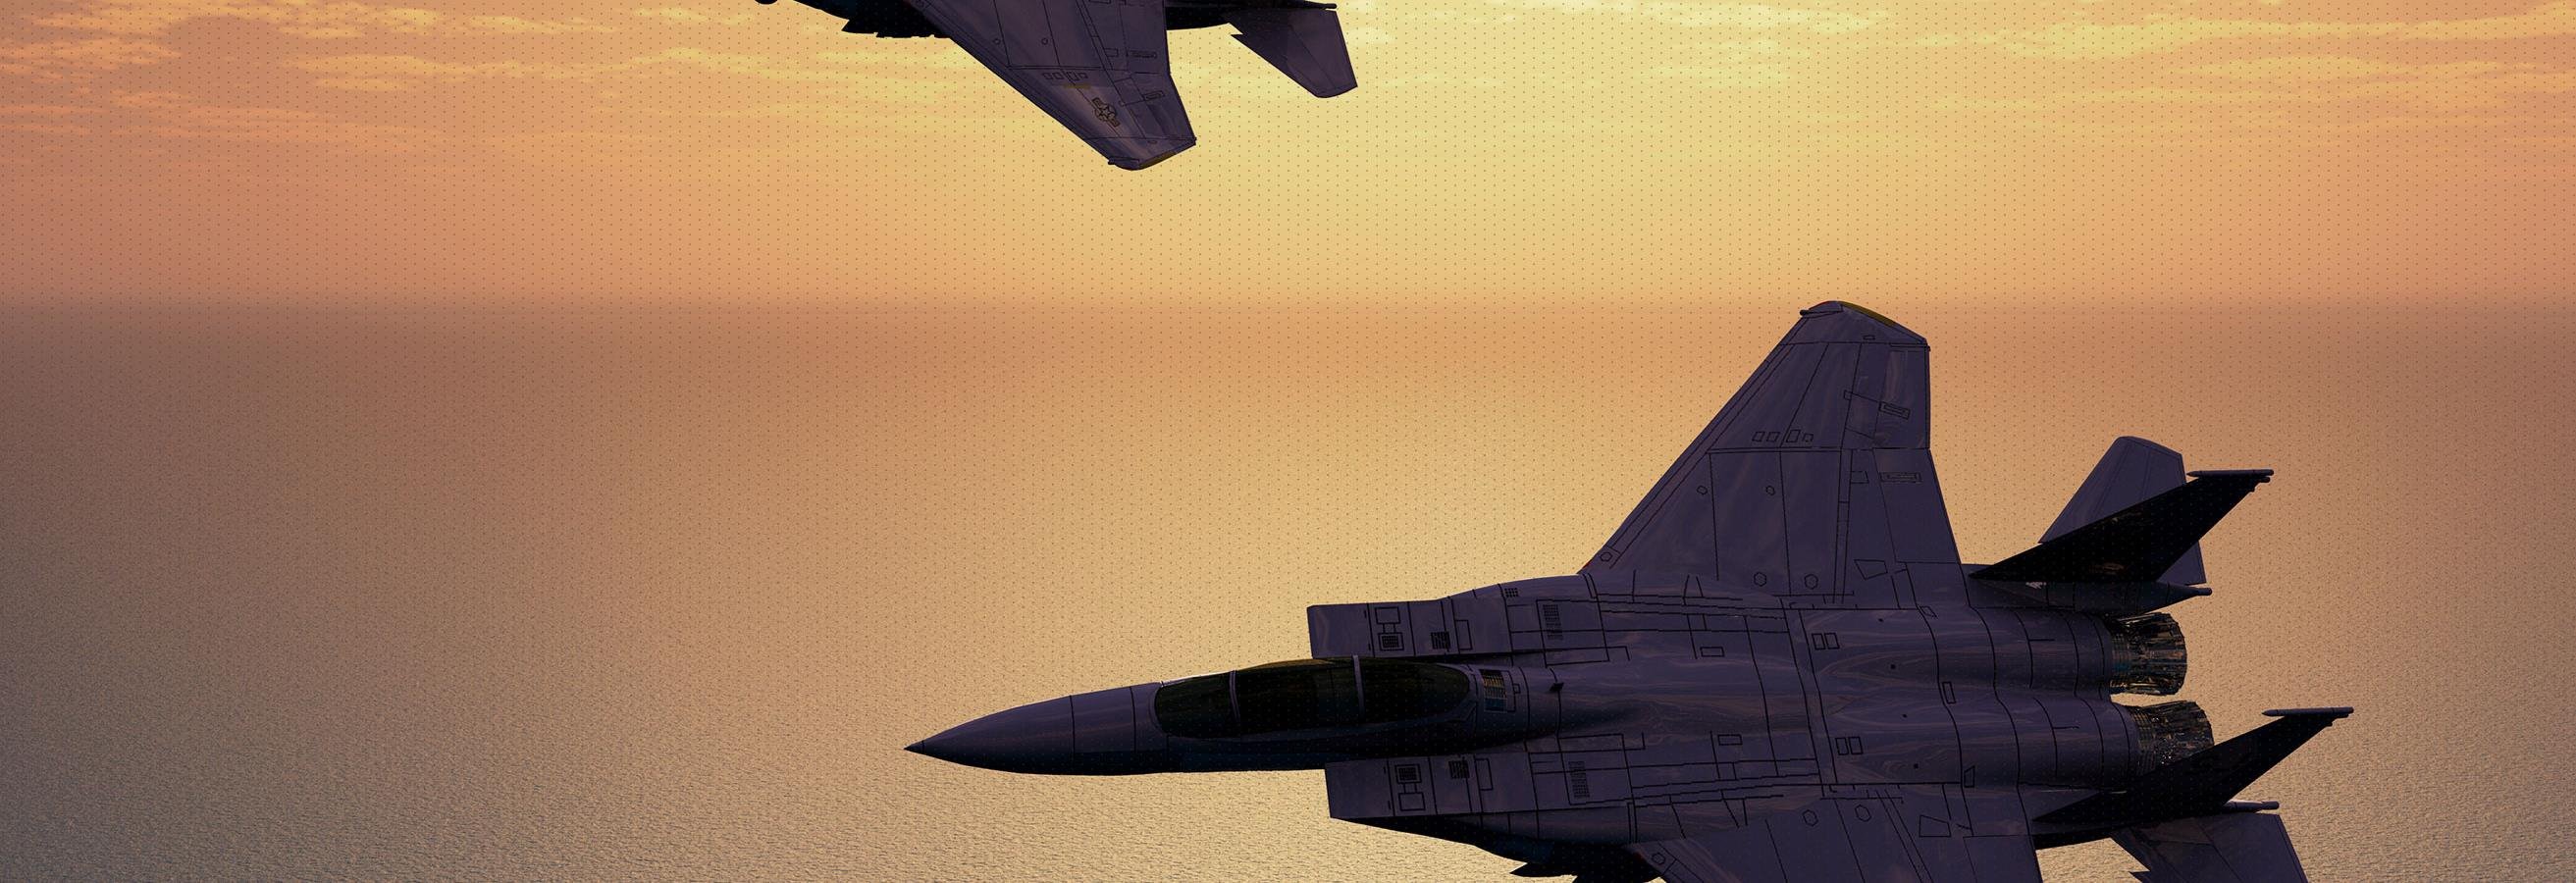 Fighter jets in sky